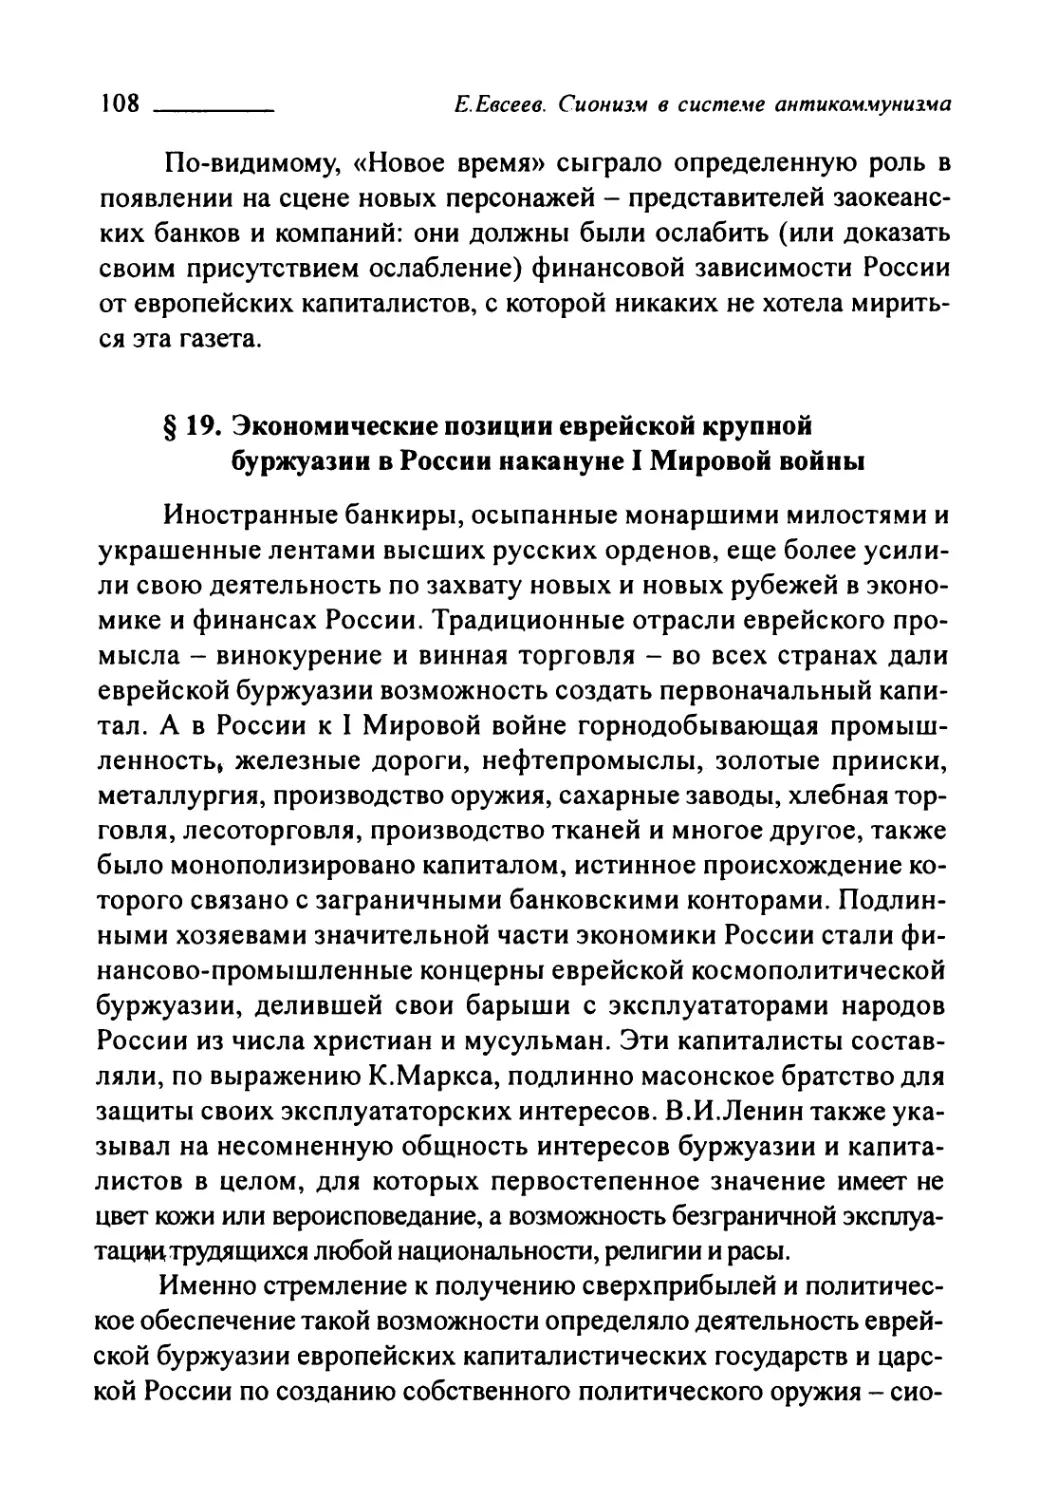 § 19. Экономические позиции еврейской крупной буржуазии в России накануне I Мировой войны